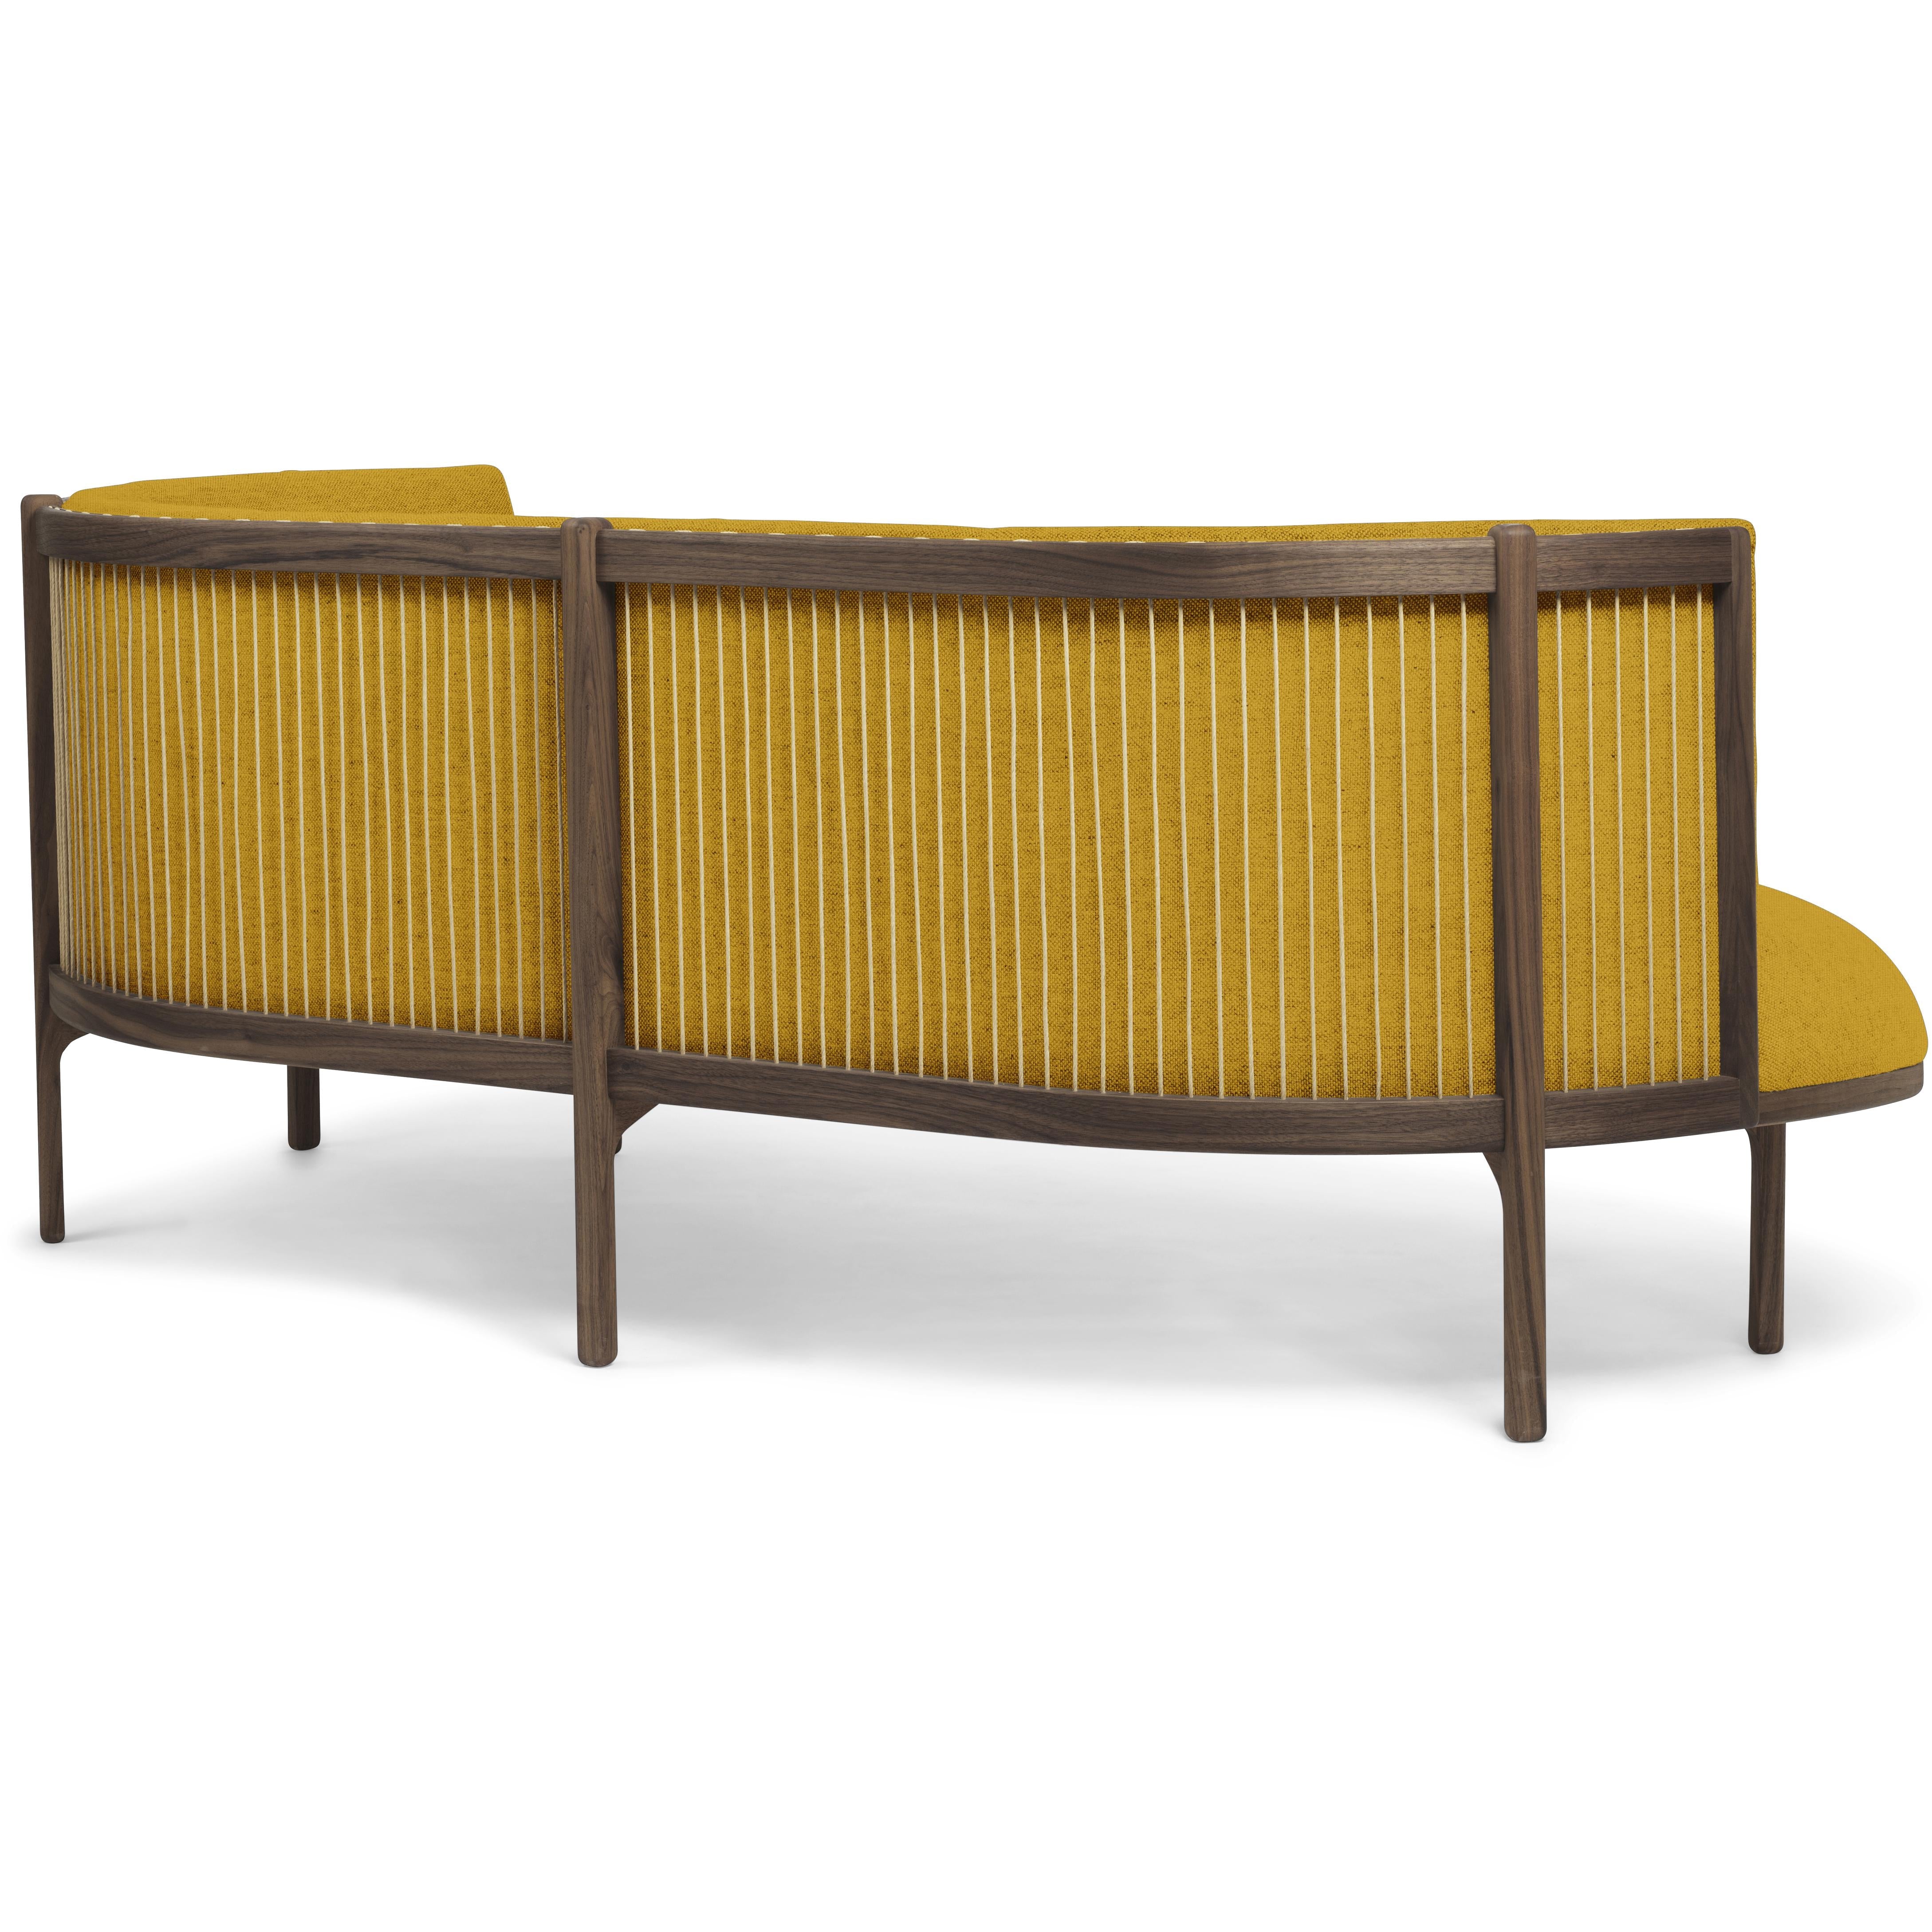 Carl Hansen RF1903 R Sideways Sofa 3 plazas de aceite de nogal derecha/Hallingdal 457 Fabic, amarillo/marrón natural